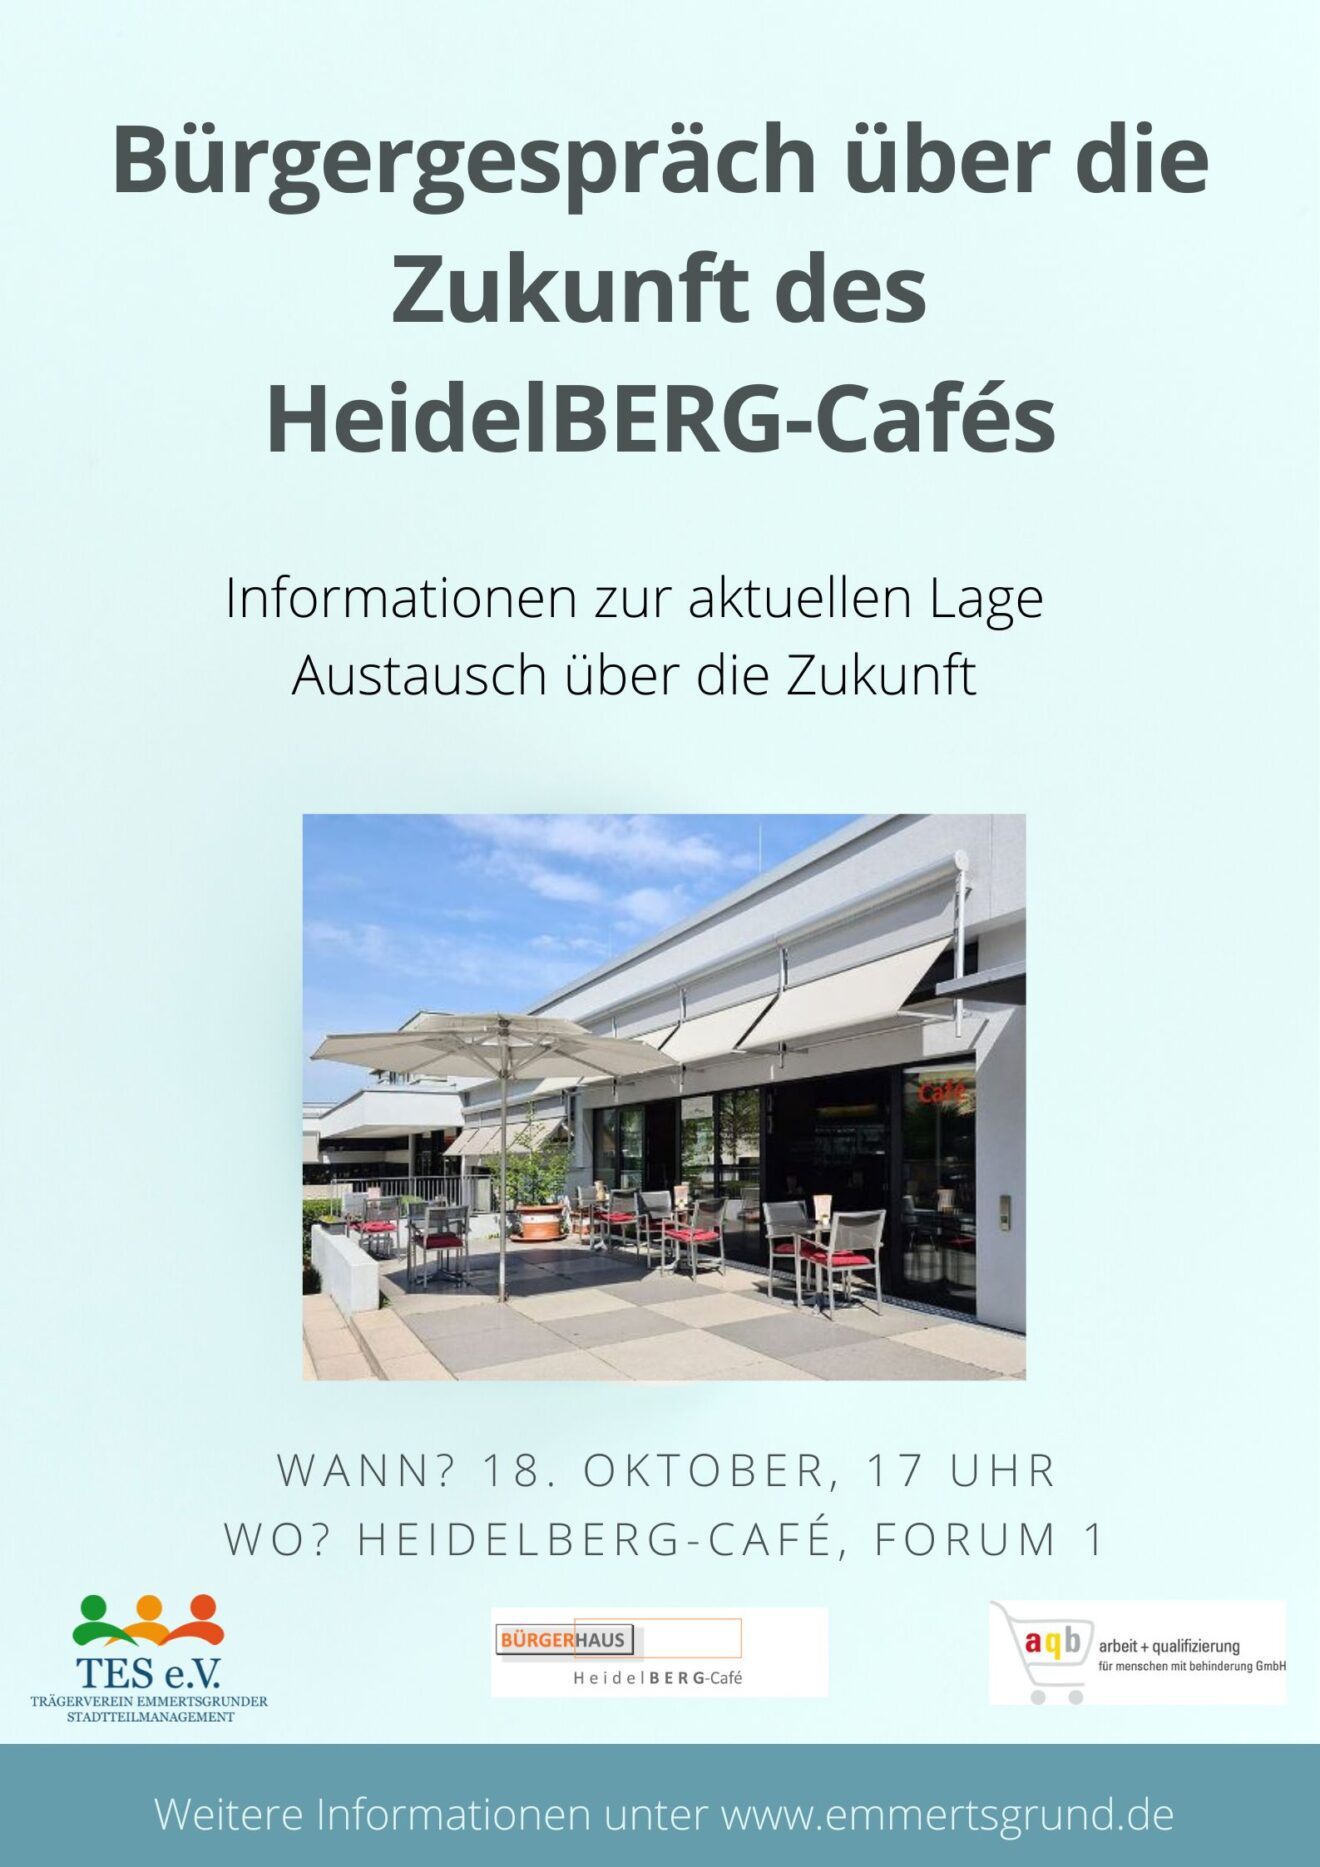 Wie geht es weiter mit dem HeidelbERG-Café?